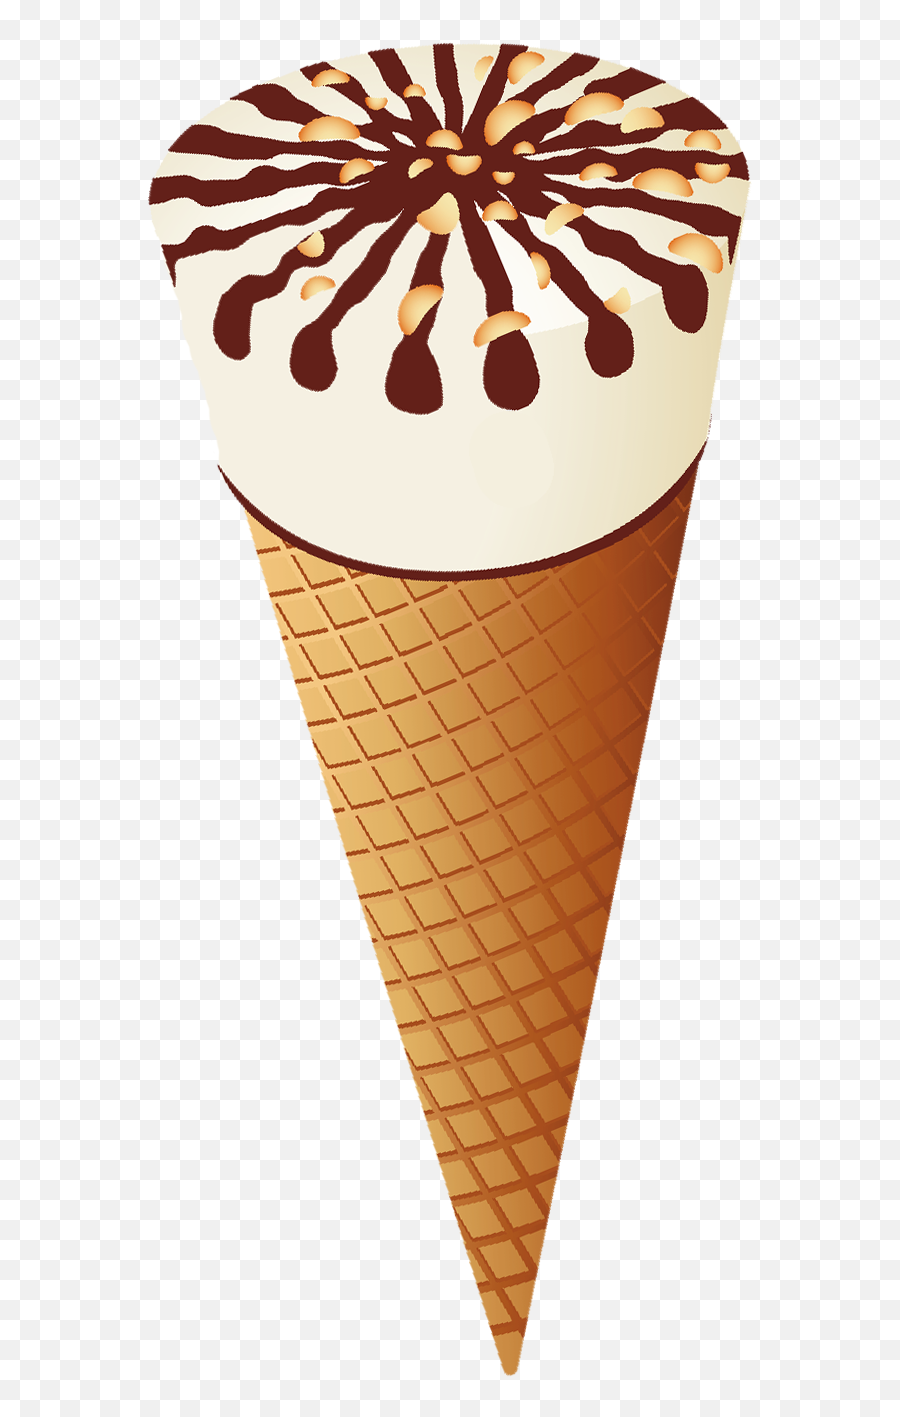 Transparent Ice Cream Cone Clipart 9 - Cone Chocolate Cornetto Ice Cream Emoji,Cone Clipart